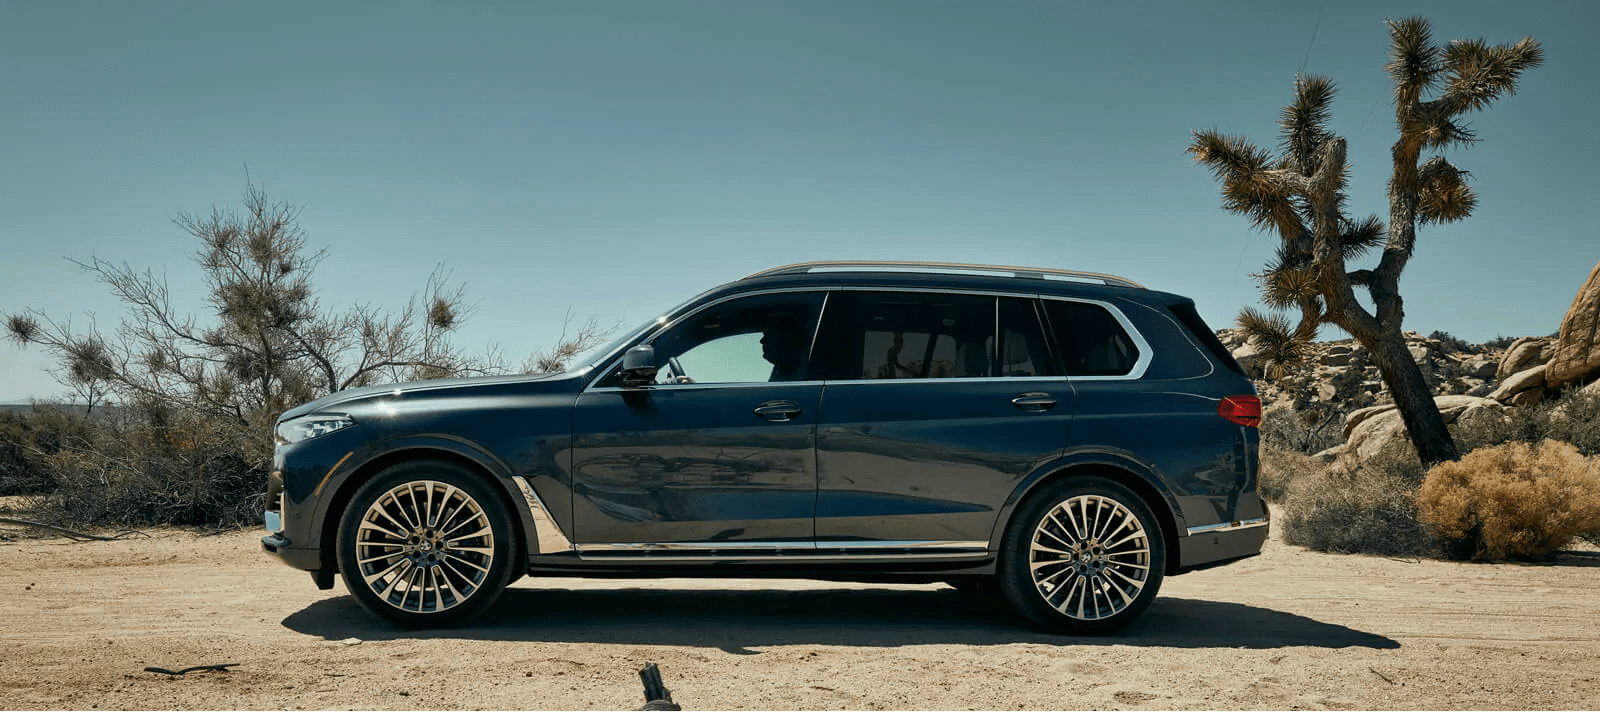 BMW X7 parked in desert scene